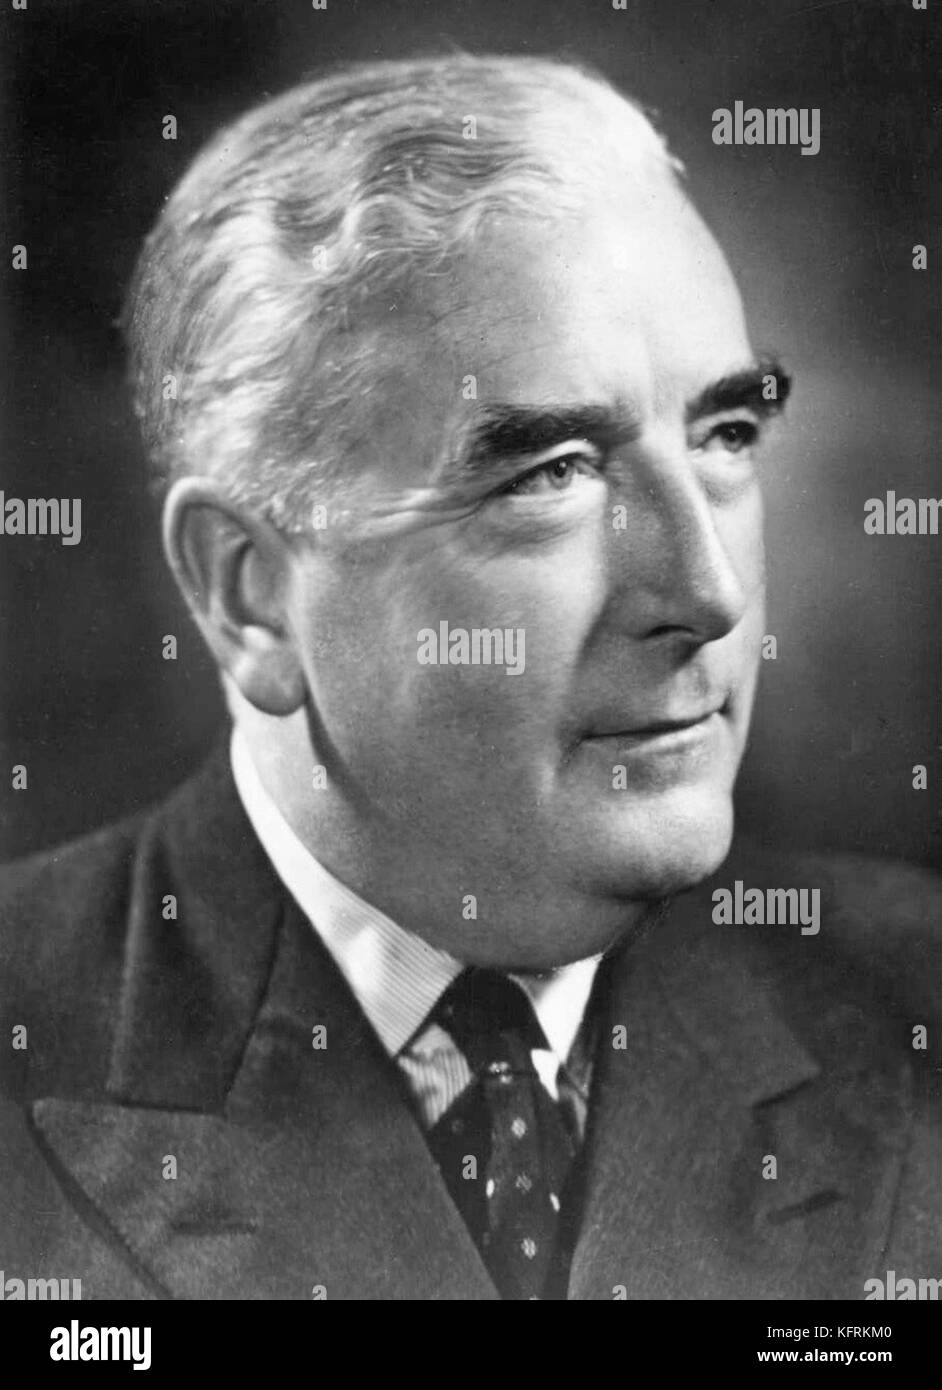 Sir Robert gordon menzies, (20 dicembre 1894 - 15 maggio 1978), il primo ministro dell'Australia dal 1939 al 1941 e di nuovo dal 1949 al 1966 Foto Stock